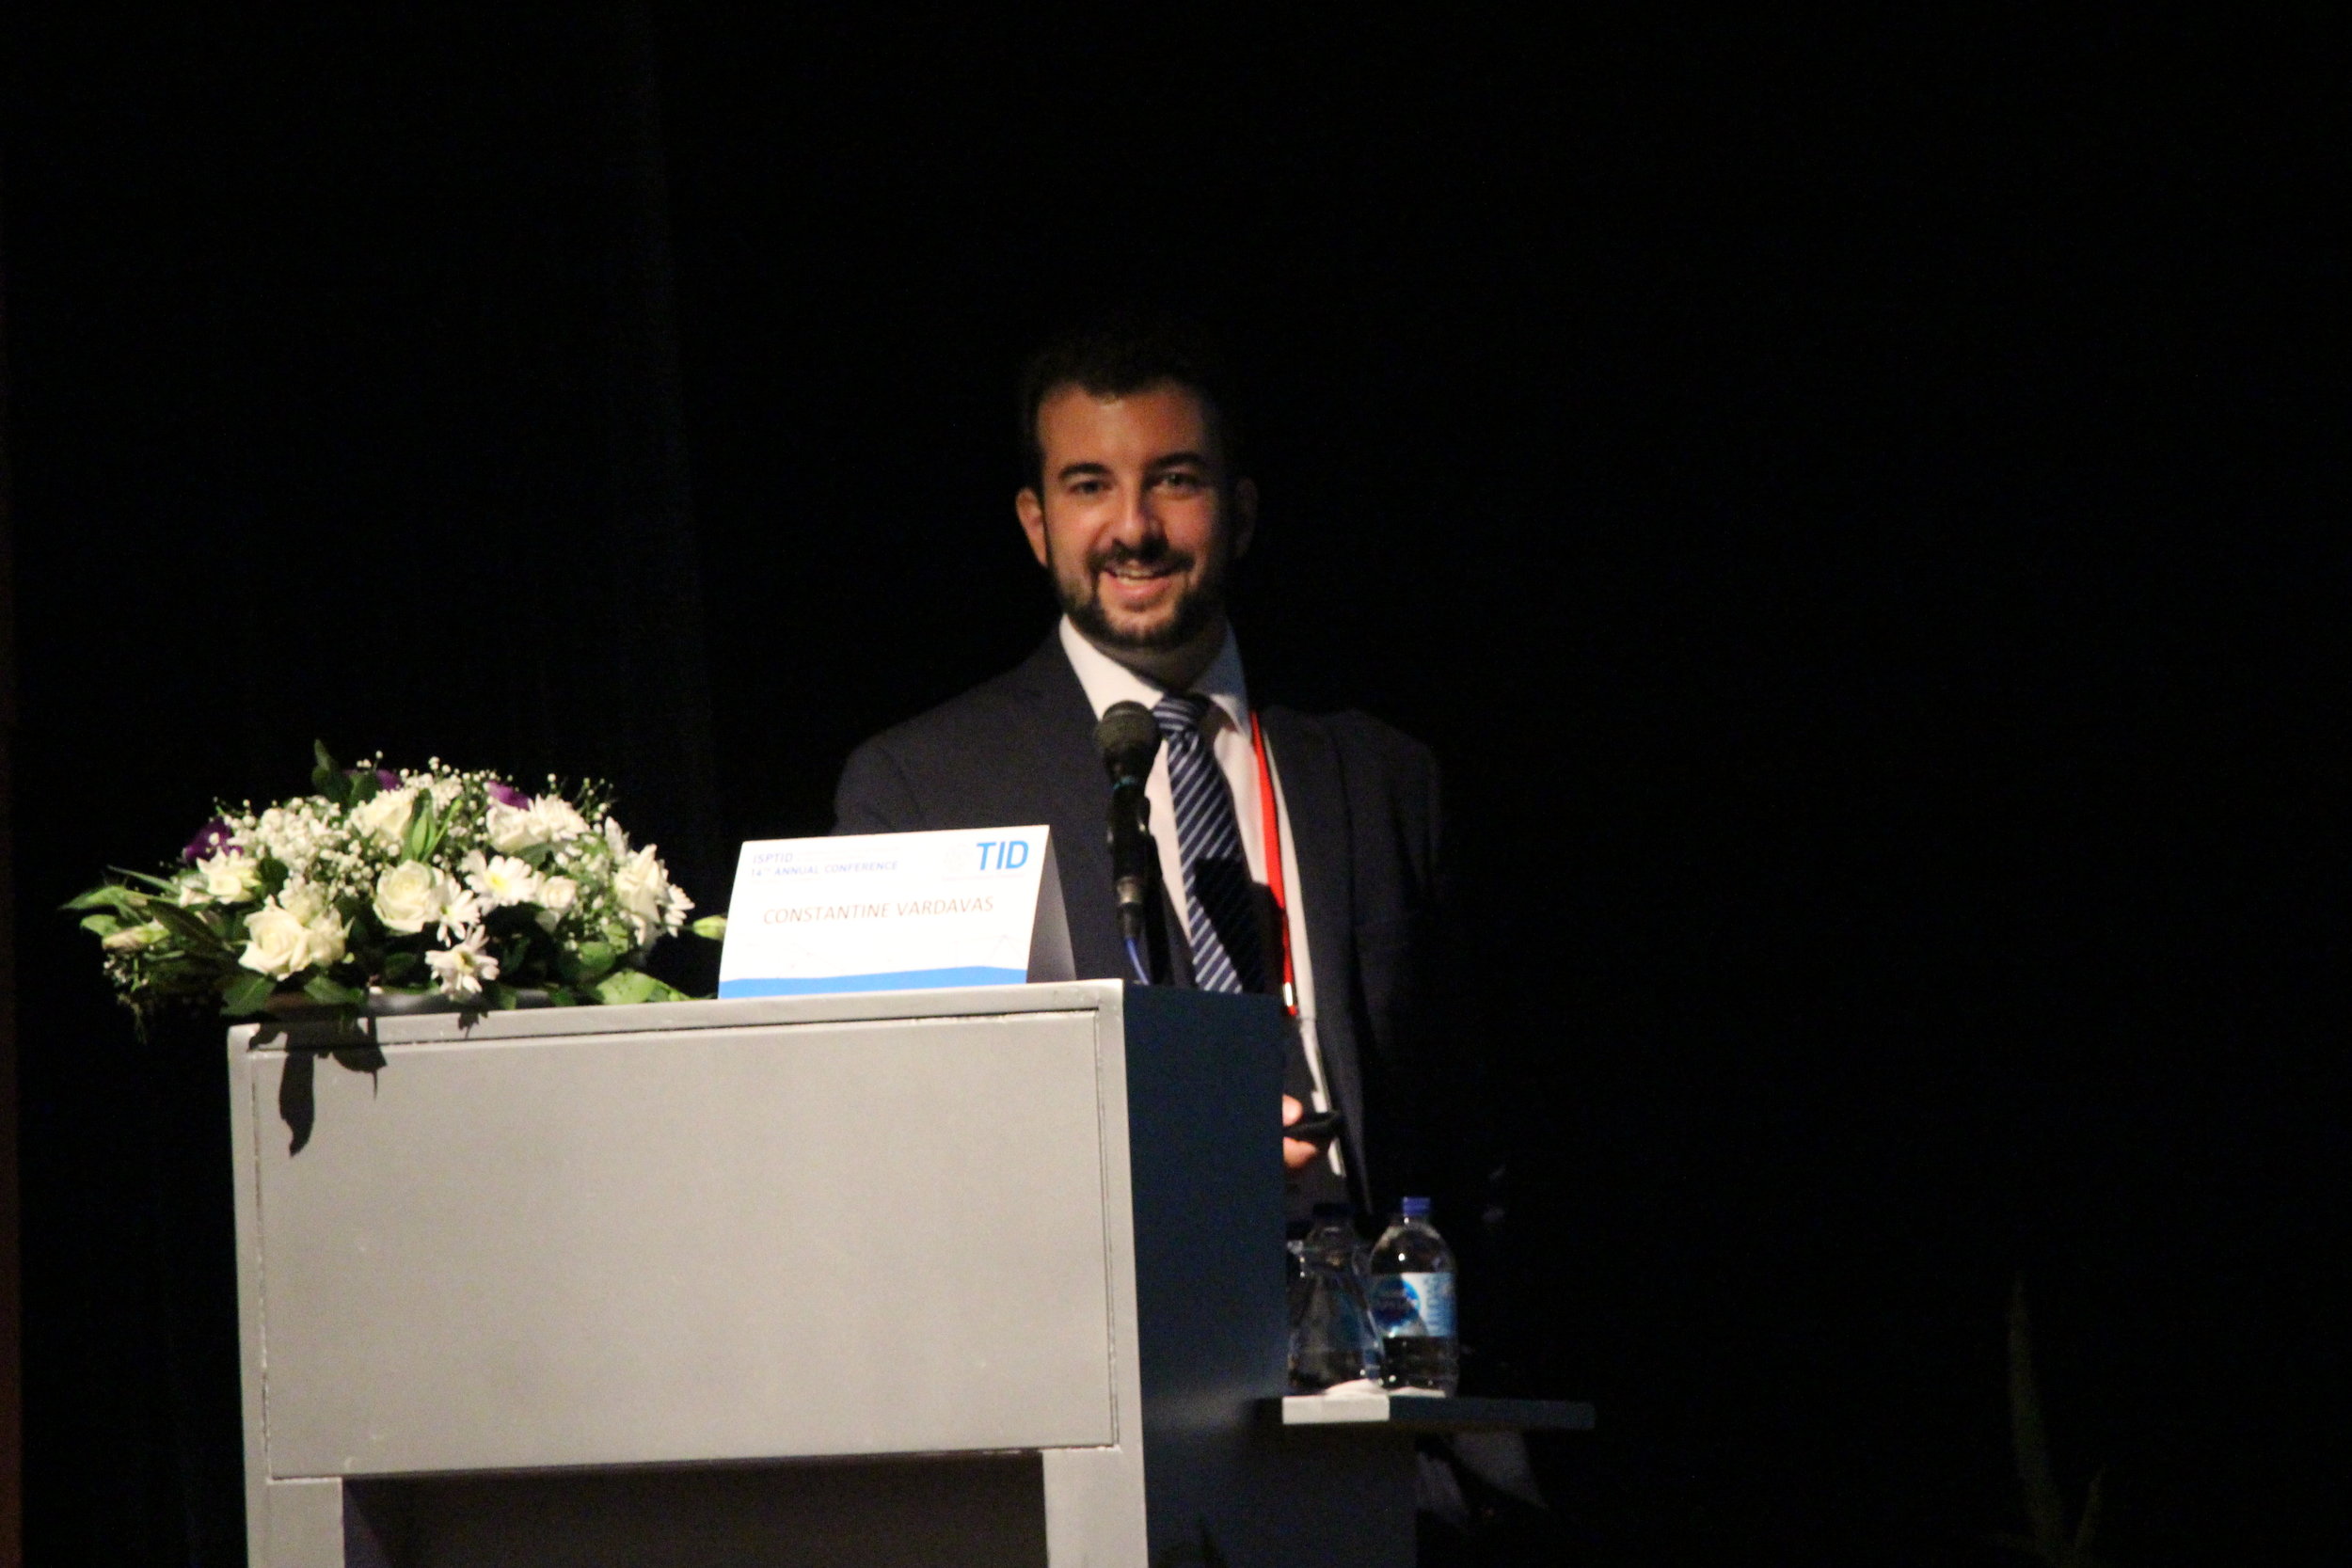 Ege Üniversitesi’nde ISPTID Kongresi Başladı-Prof. Dr. Constantine Vardavas.JPG